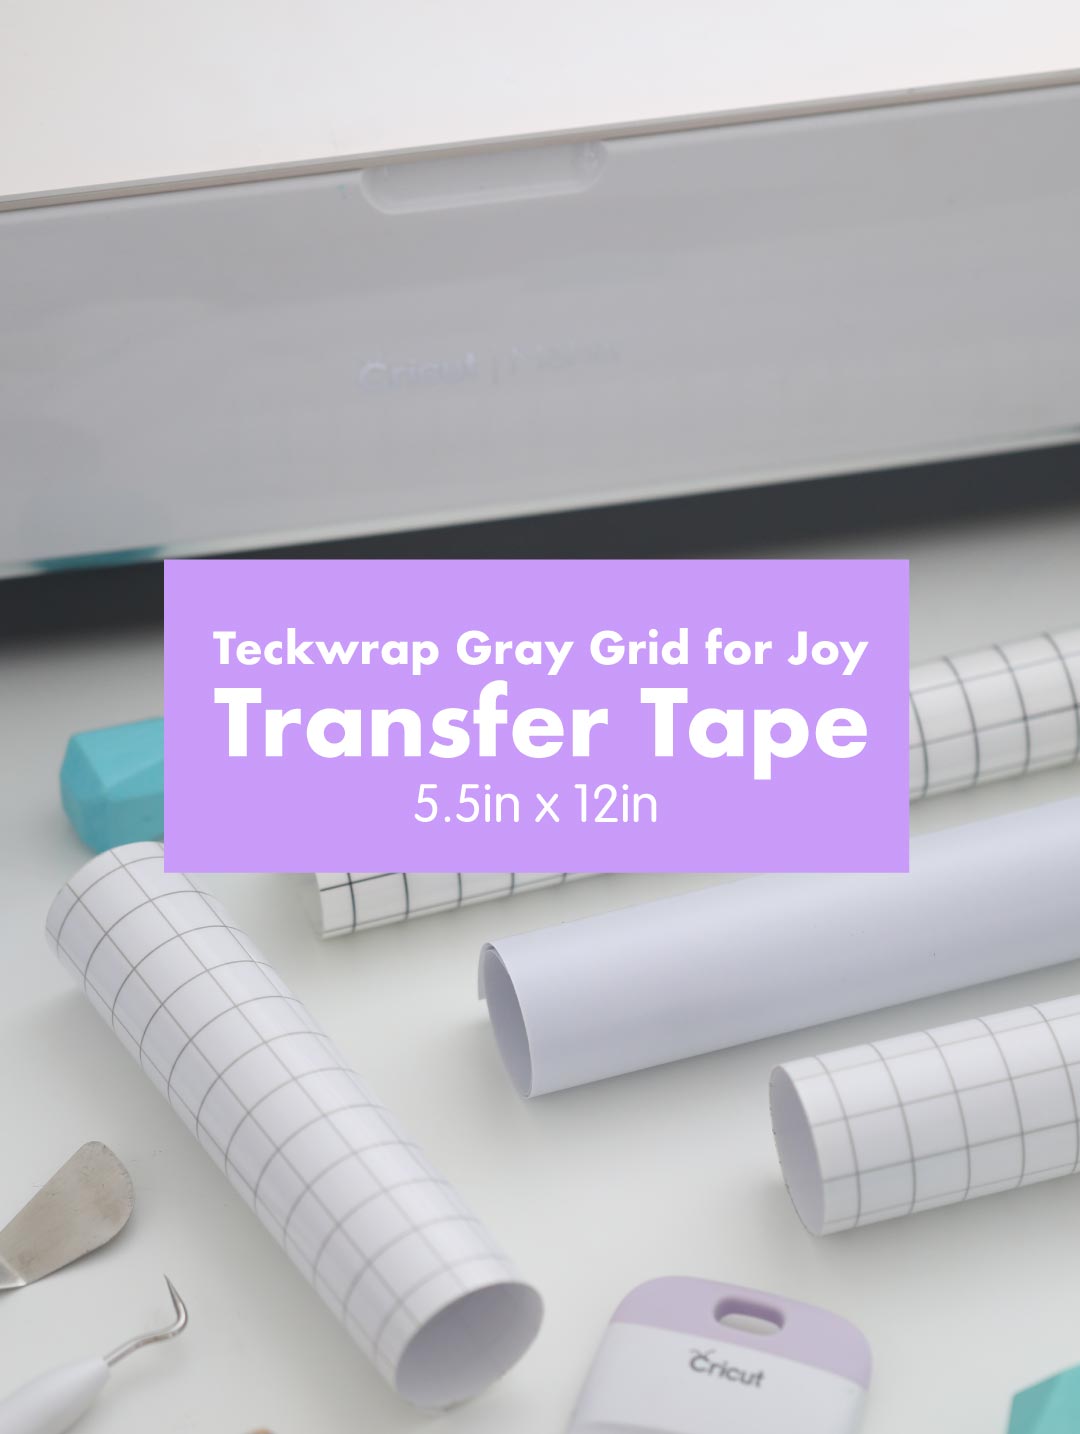 Teckwrap Vinyl Sticker Transfer Tape (12in x 12in)